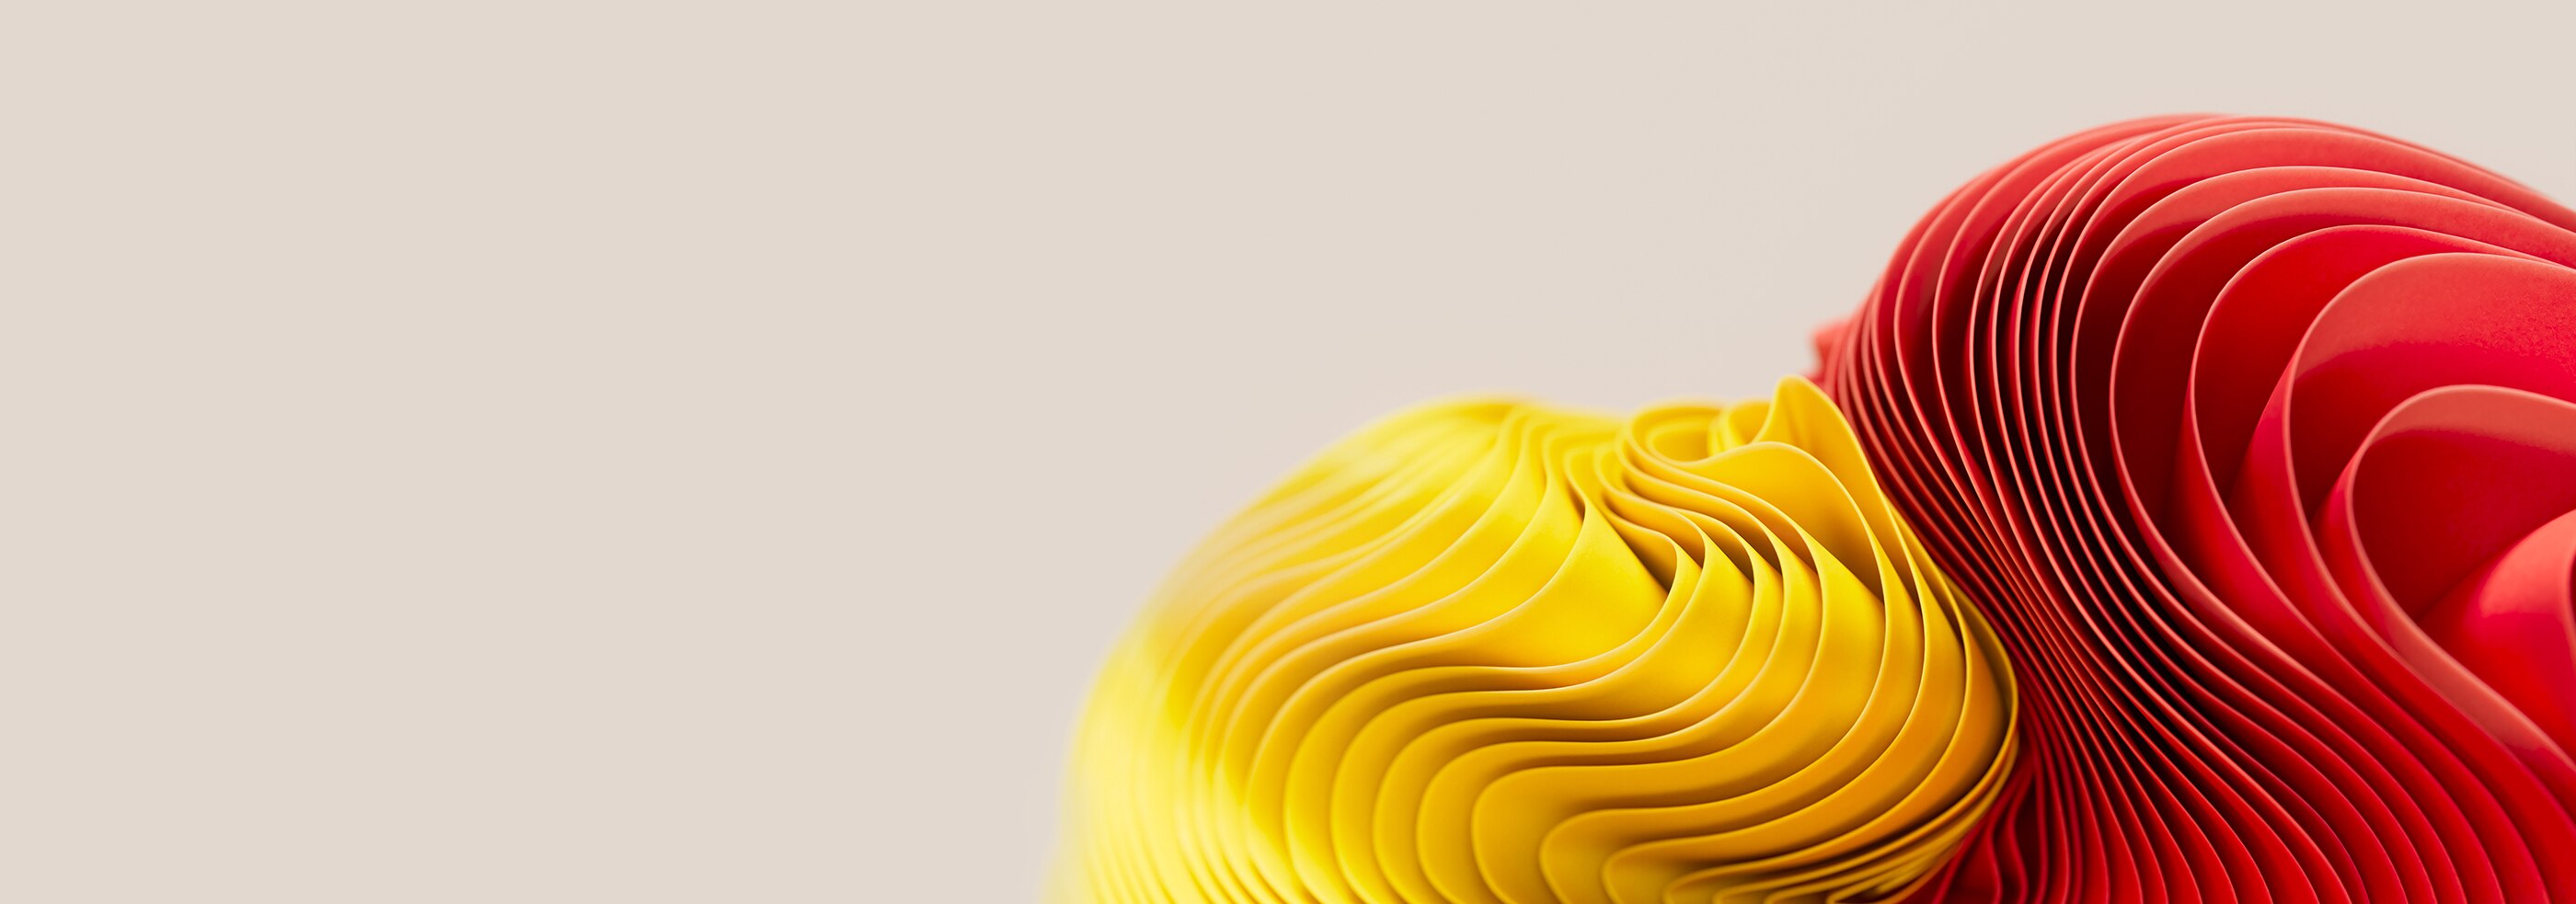 Una forma abstracta en un fondo amarillo y rojo